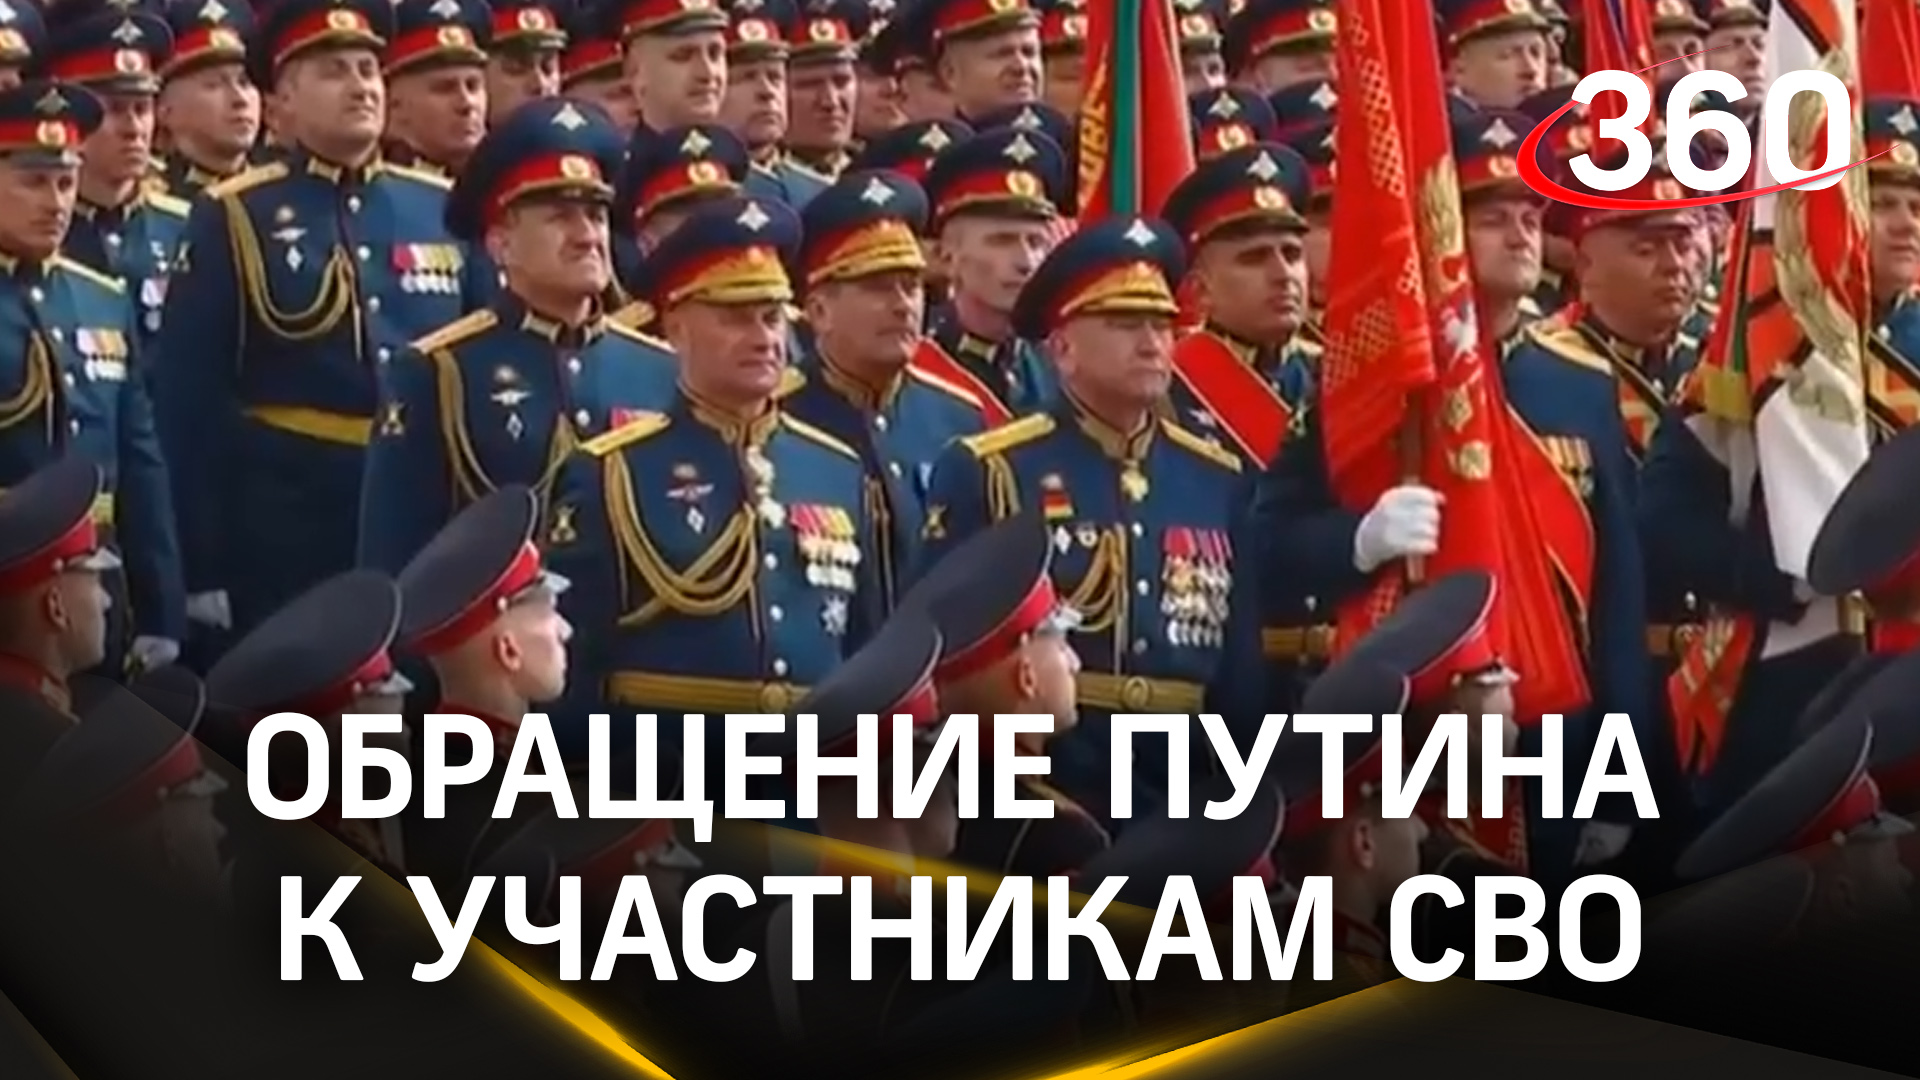 Путин обращается к участникам СВО во время парада Победы